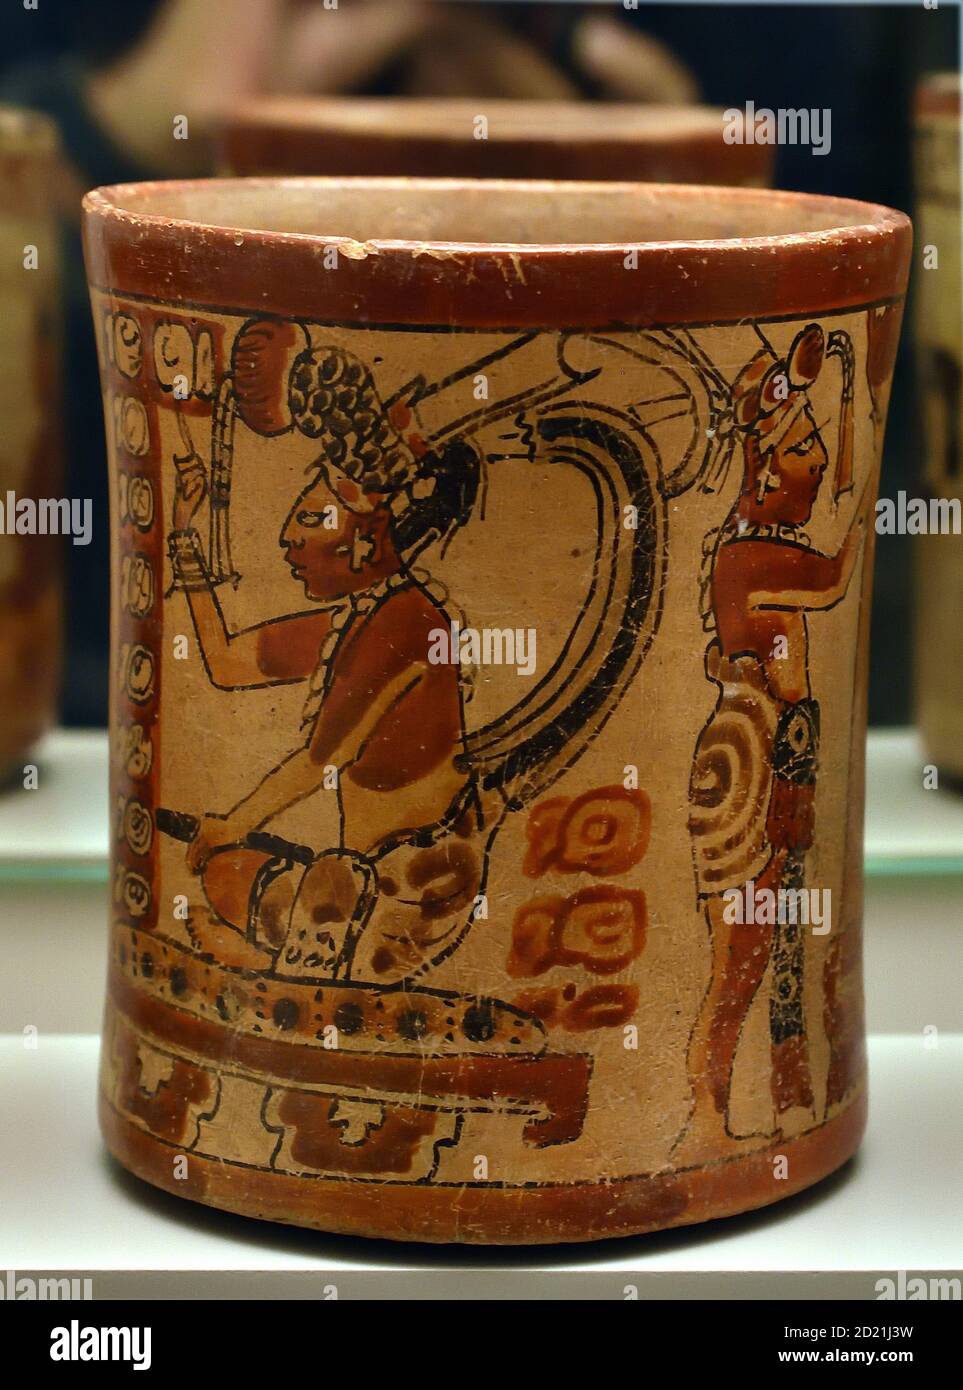 Vase dekoriert mit höfischen Szenen. Lackierte Keramik. Maya-Kultur. Späte klassische Periode (600-900 n. Chr.). Mesoamerika. Mittel-, Amerika-, Amerikaner-, Stockfoto